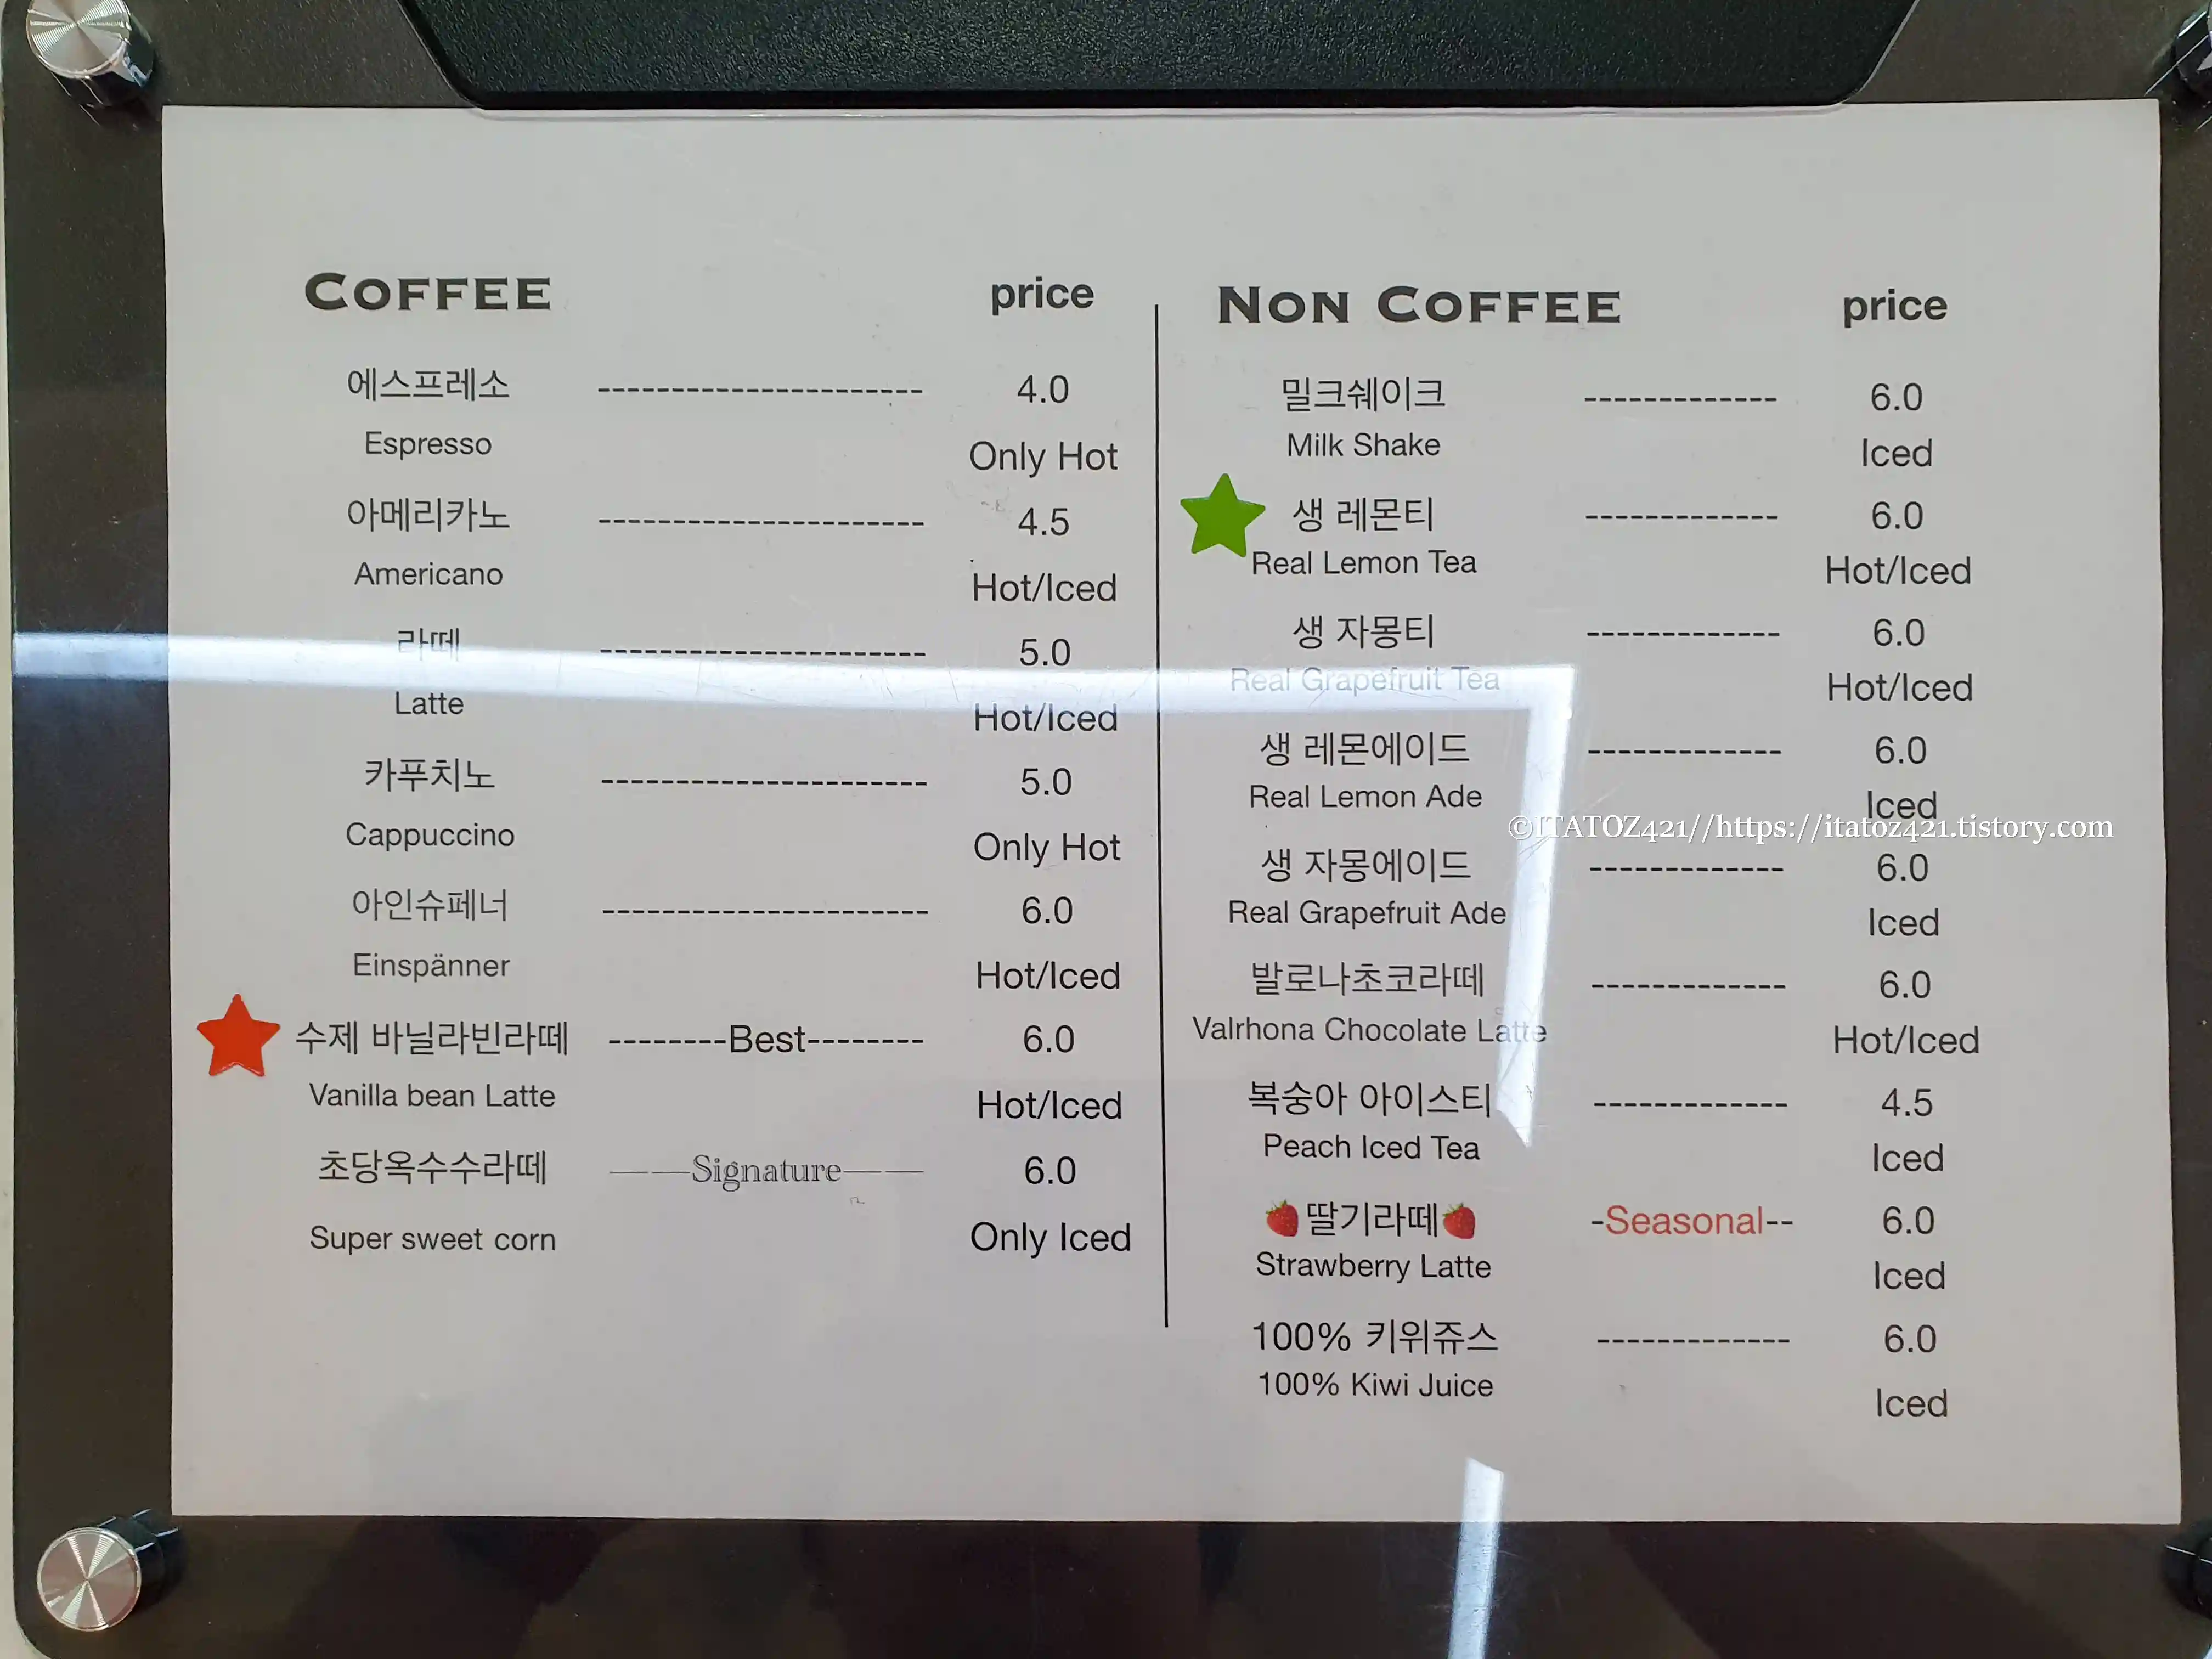 경주 카페 퍼즈 커피 로스트 메뉴 및 가격